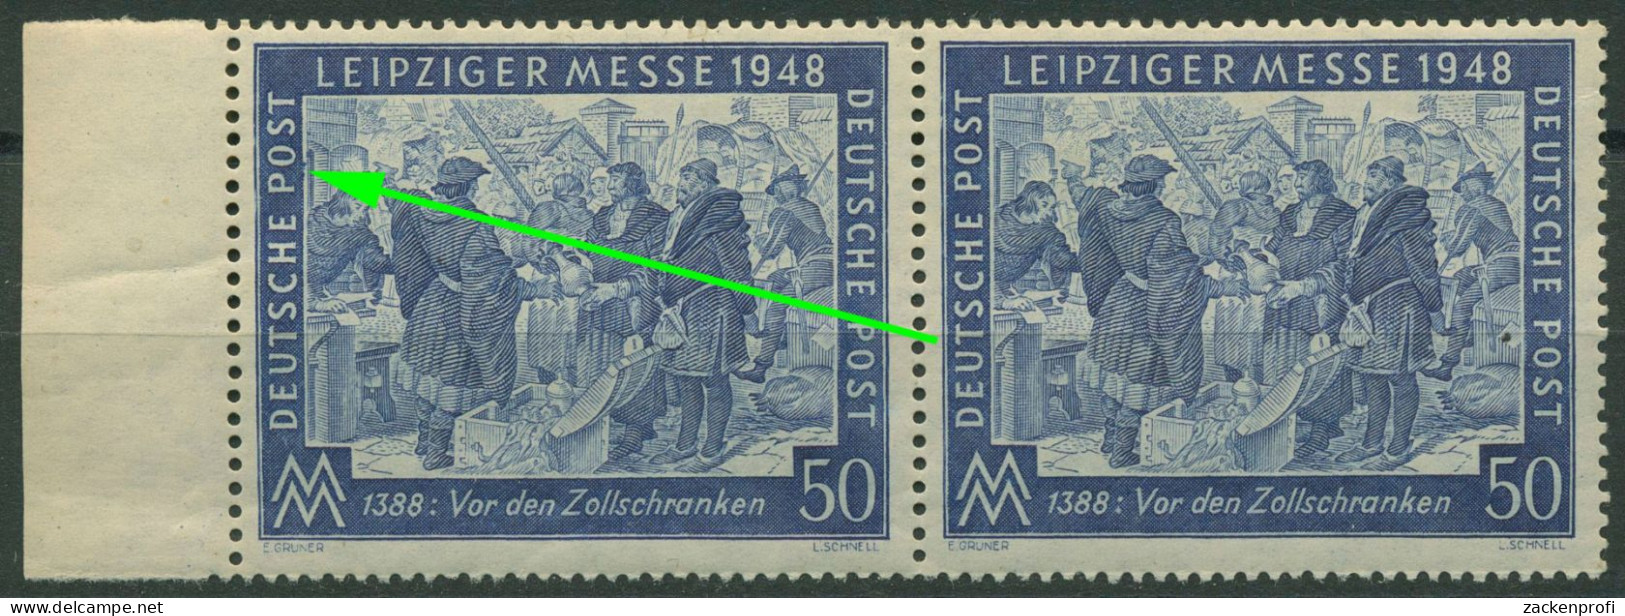 Alliierte Besetzung 1948 Leipziger Messe Mit Plattenfehler 967 I Postfrisch - Postfris